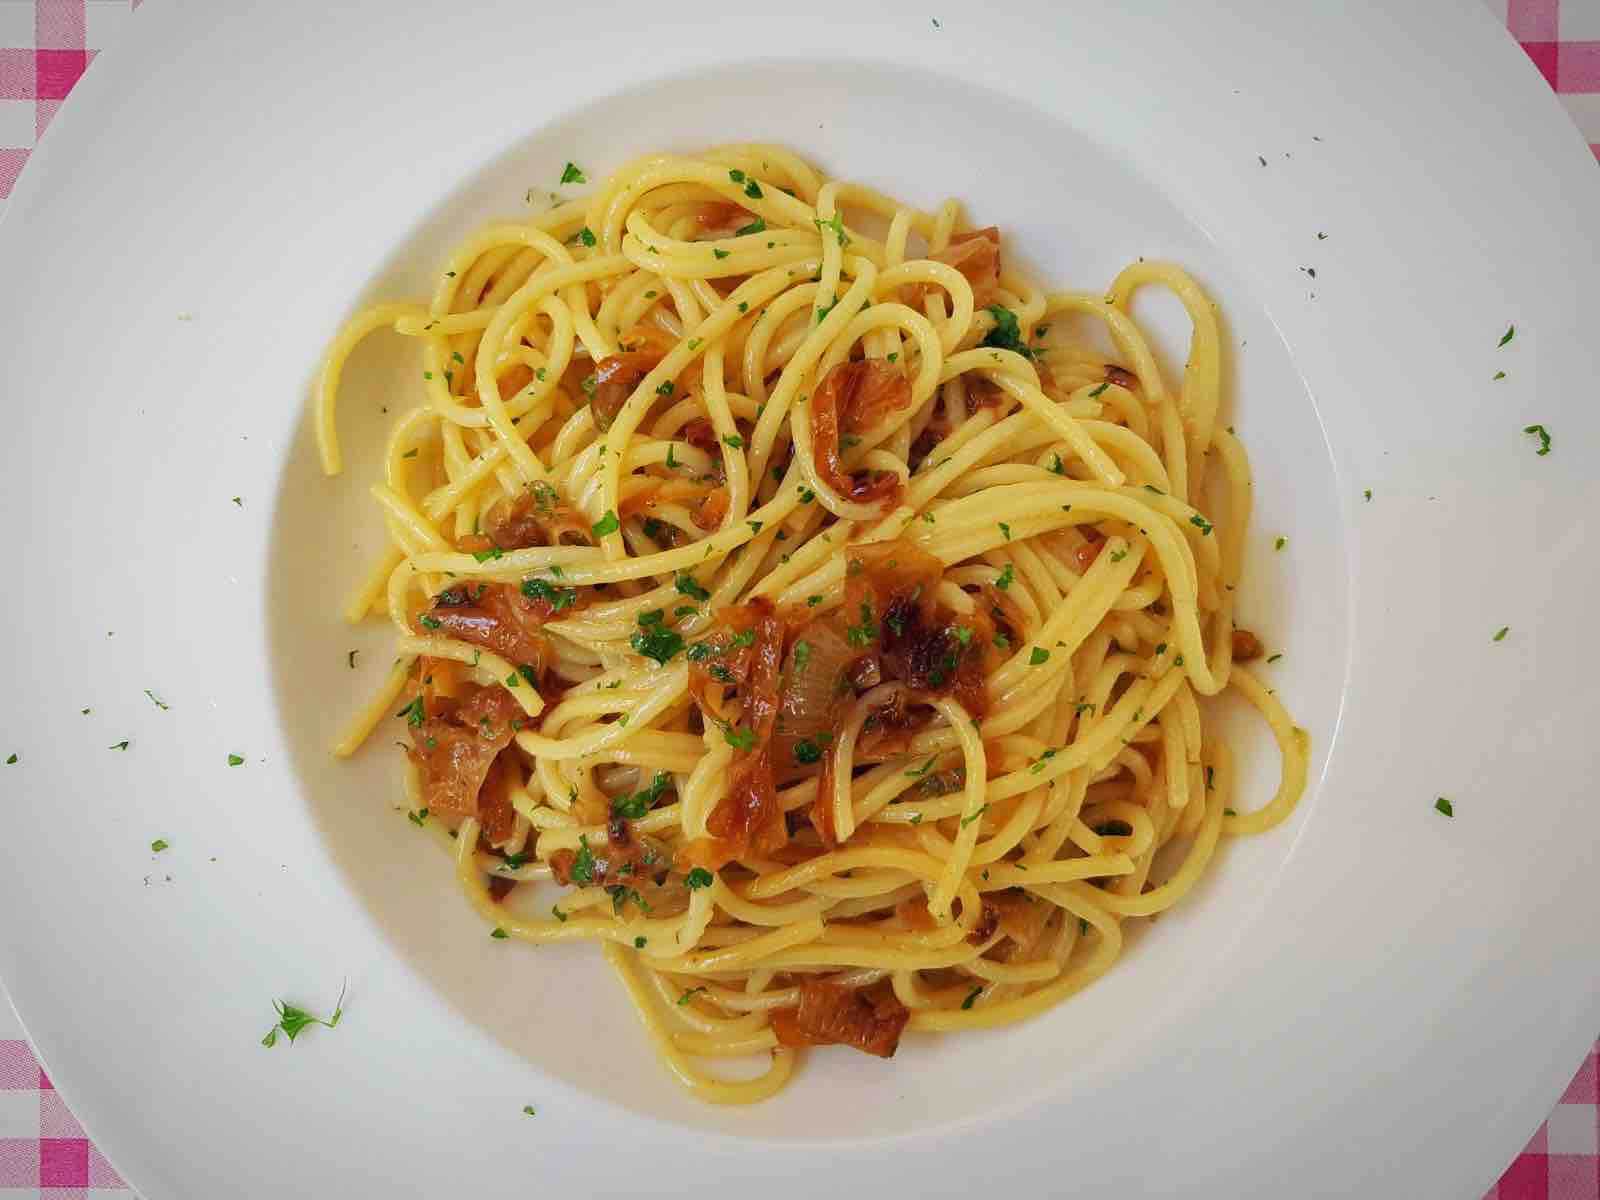 Spaghetti met gekarameliseerde ui, kaas en boter